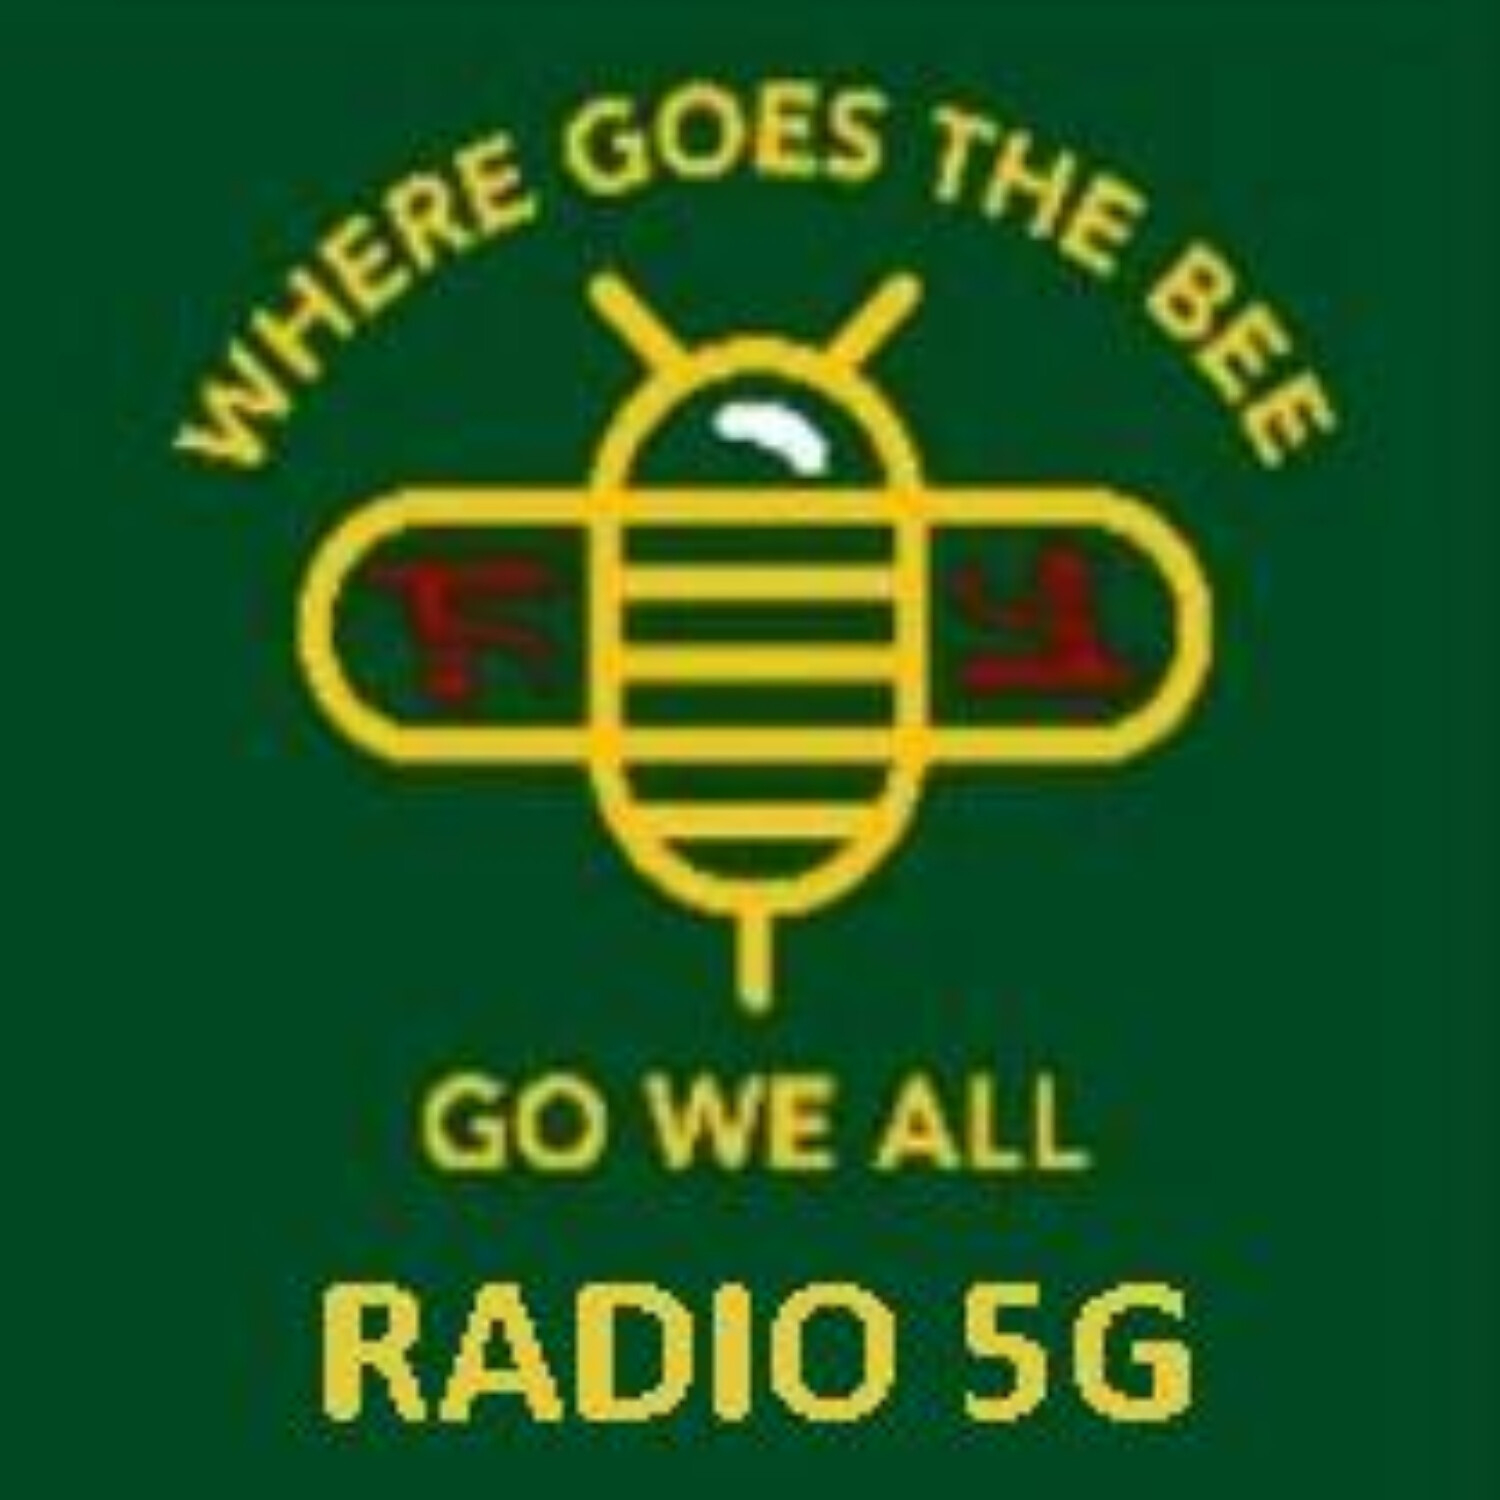 “RADIO 5G” 5/4/22 - Dr Christiane Northrop & Reiner Fuellmich